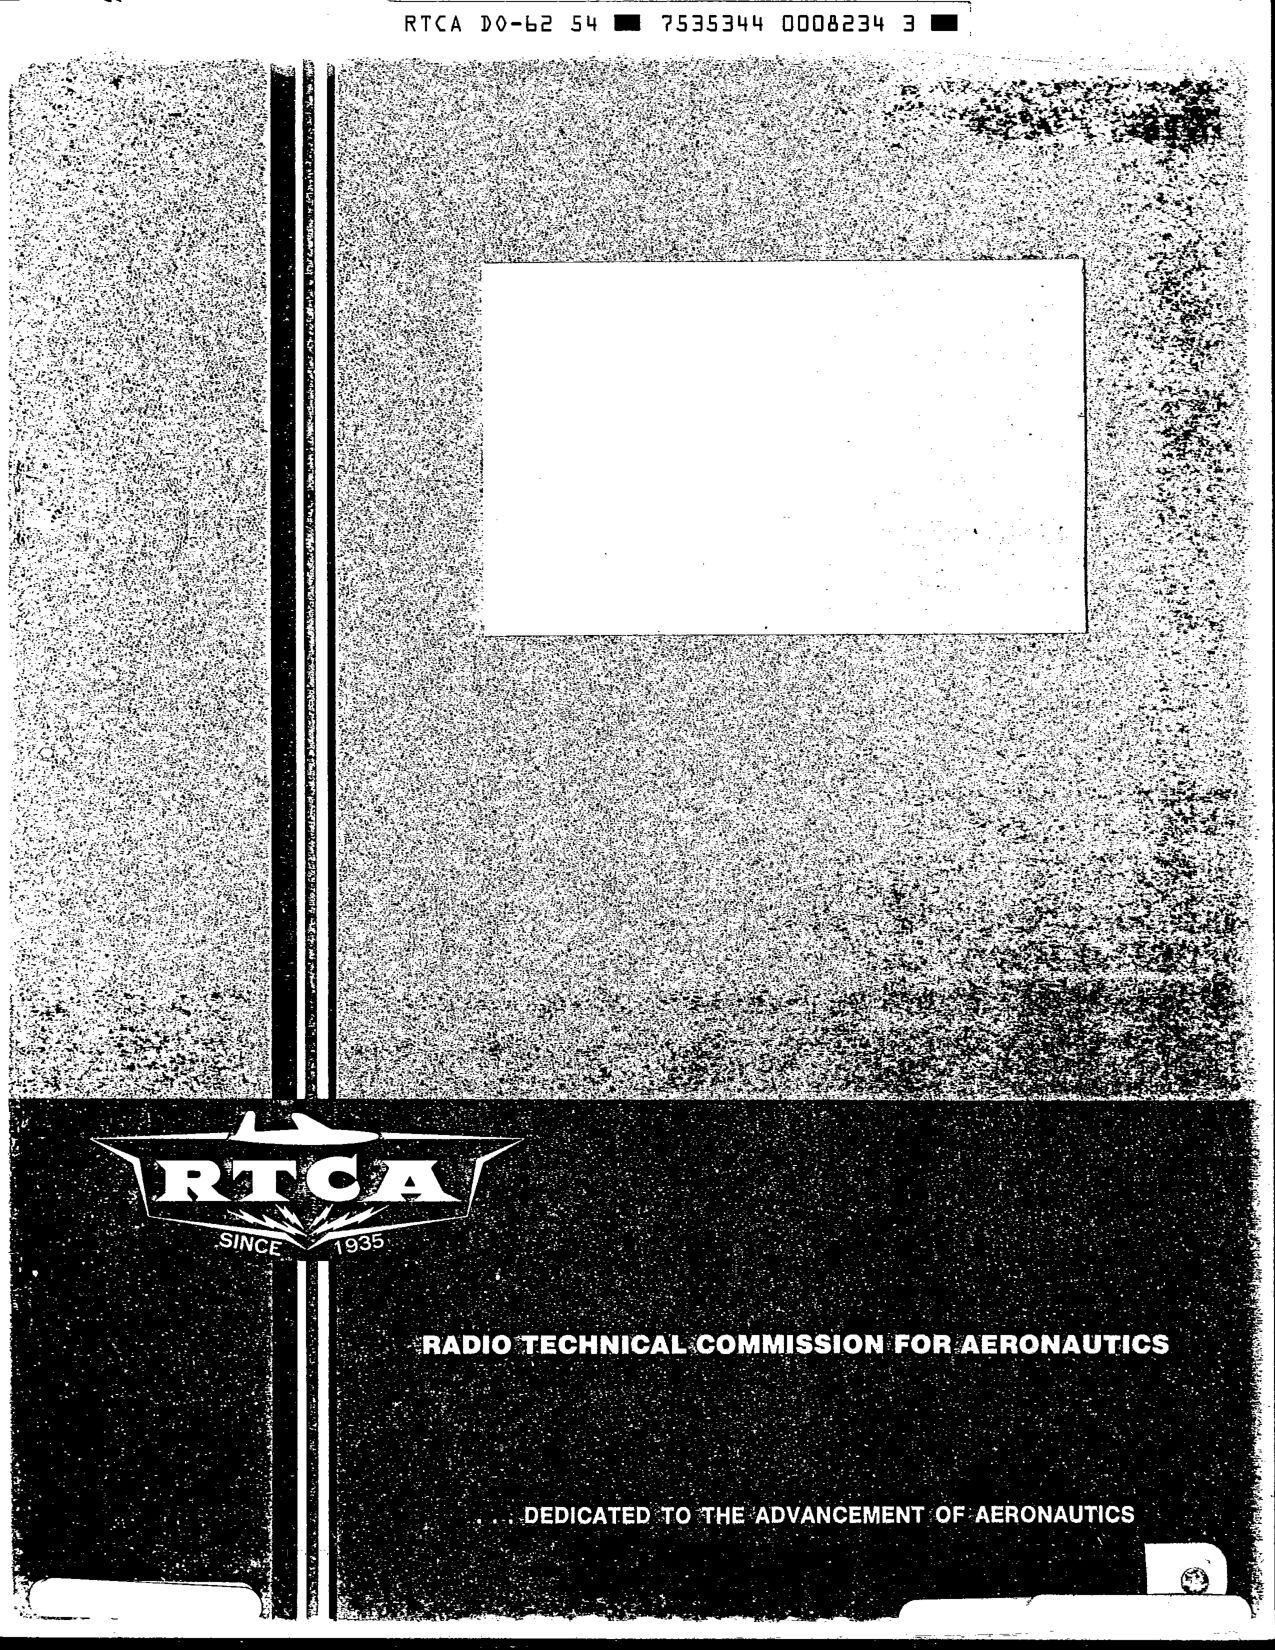 RTCA DO-062-1954